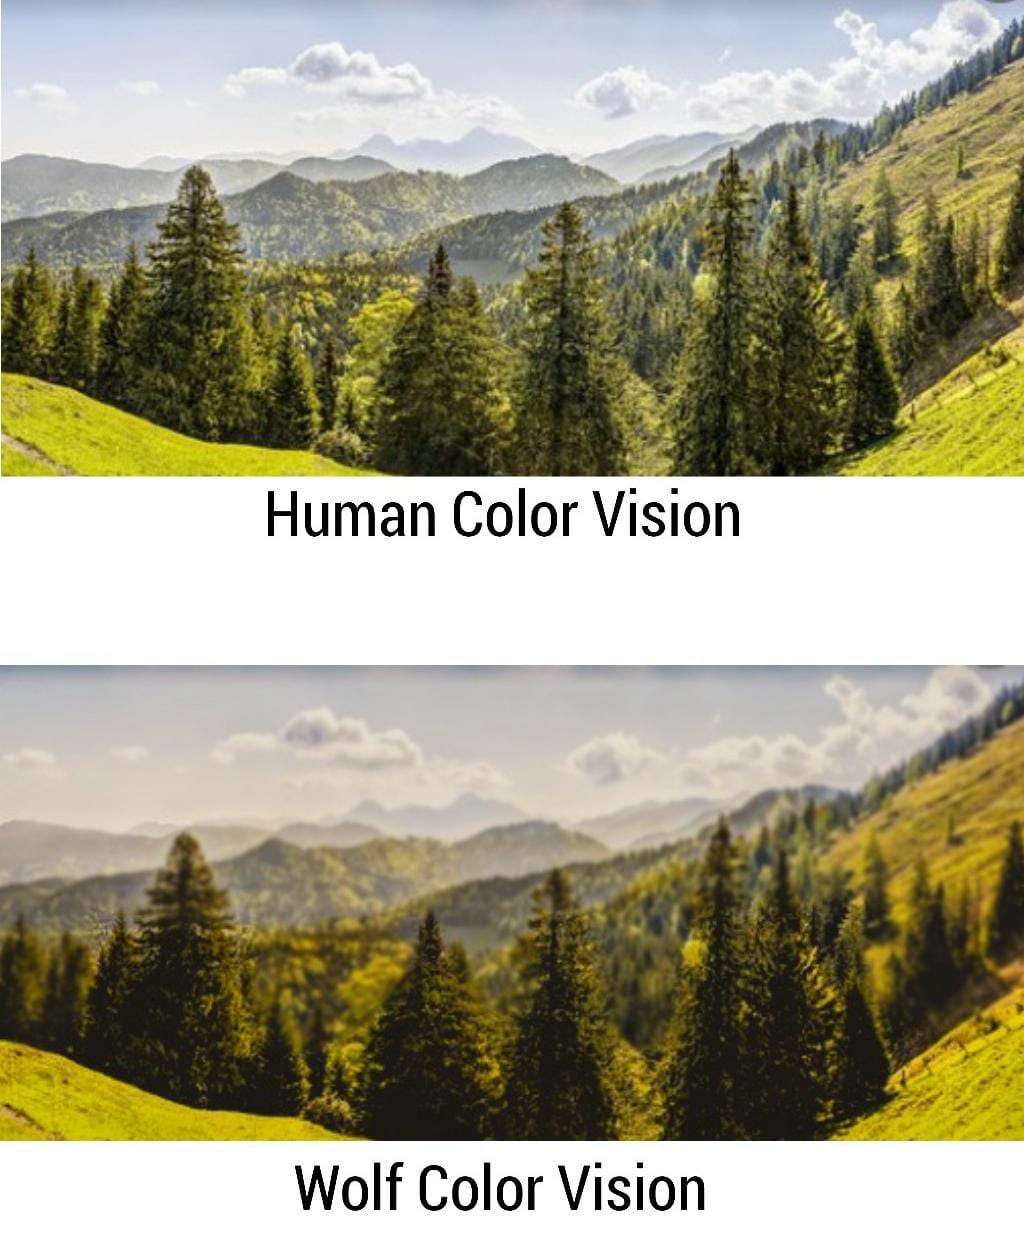 Human Vision vs. Wolf Vision